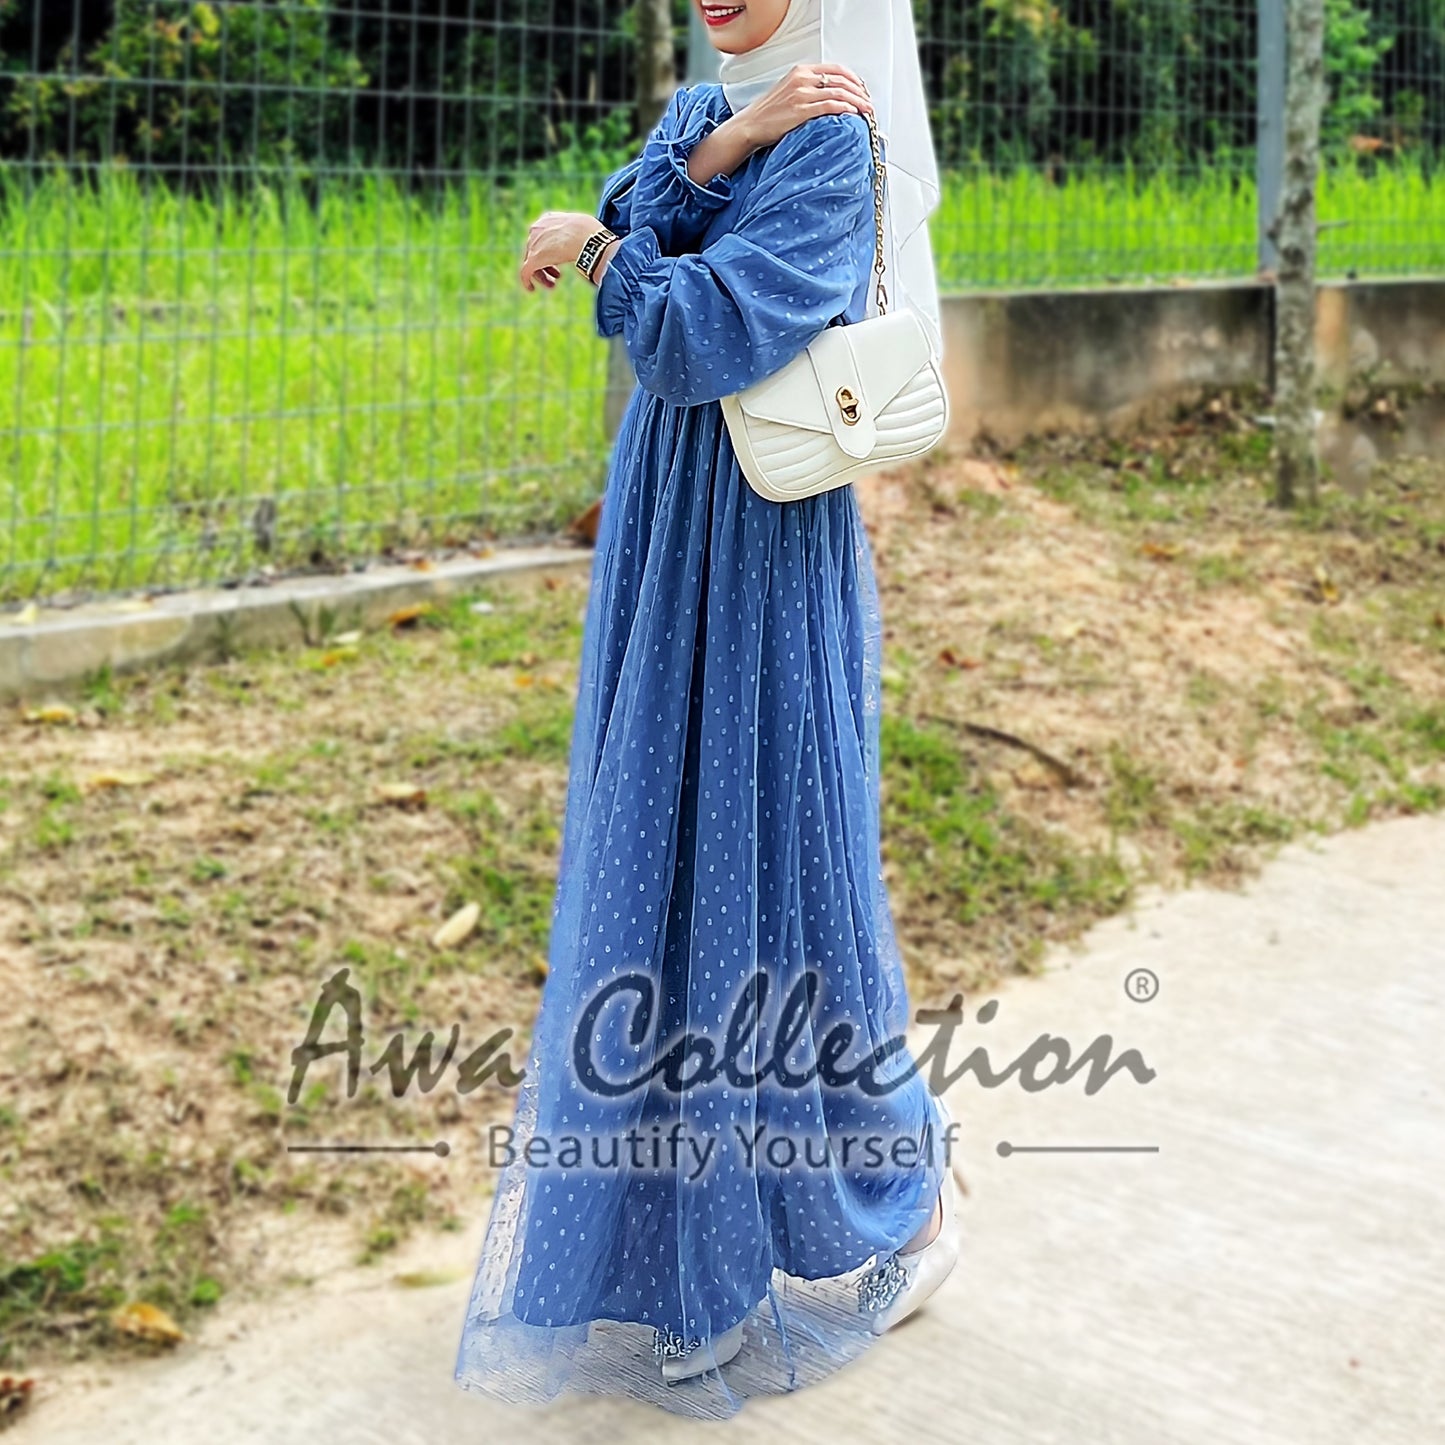 LALEESA Awa Collection DRESS JINA DA109181 Dress Muslimah Dress Women Dress Jubah Muslimah Jubah Abaya Baju Raya 2023